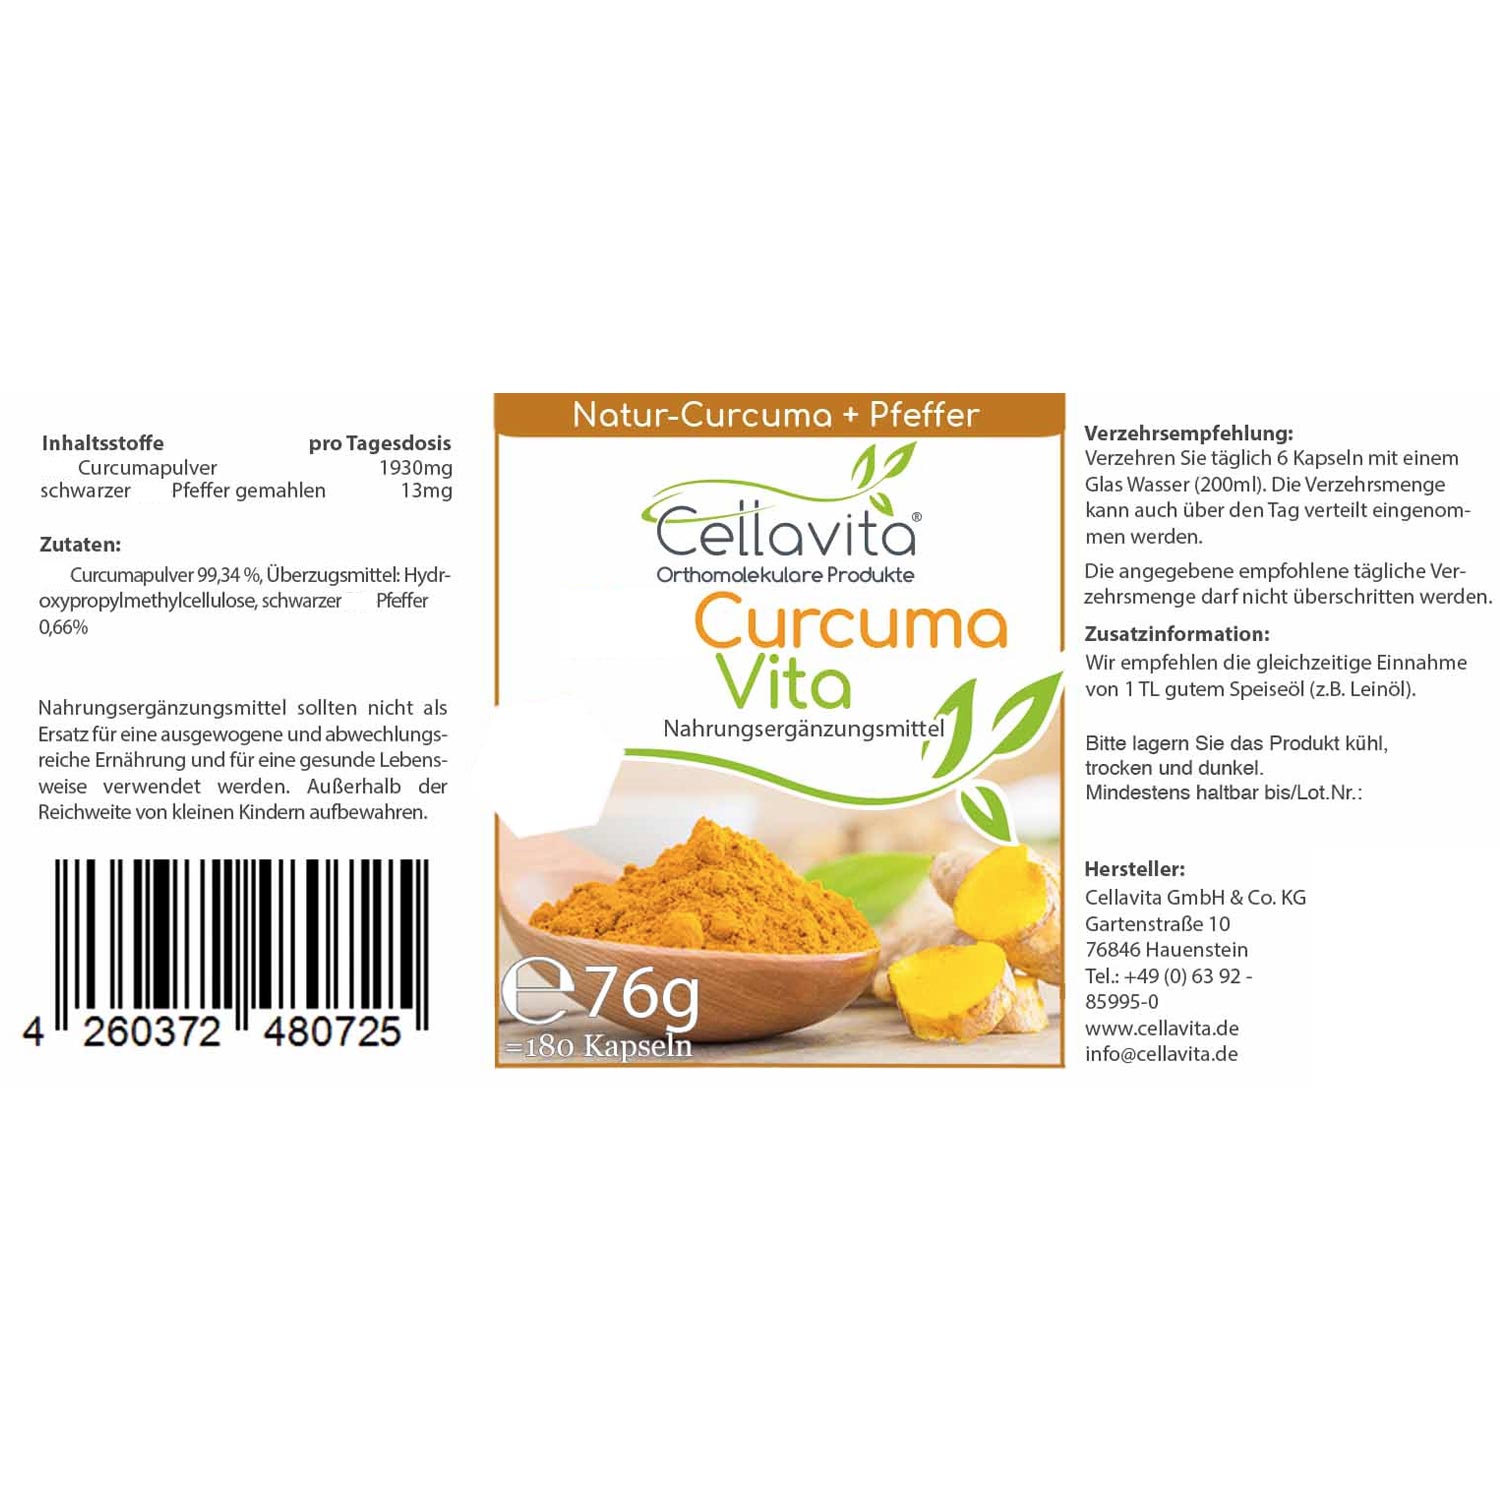 Curcuma Vita von Cellavita - Etikett